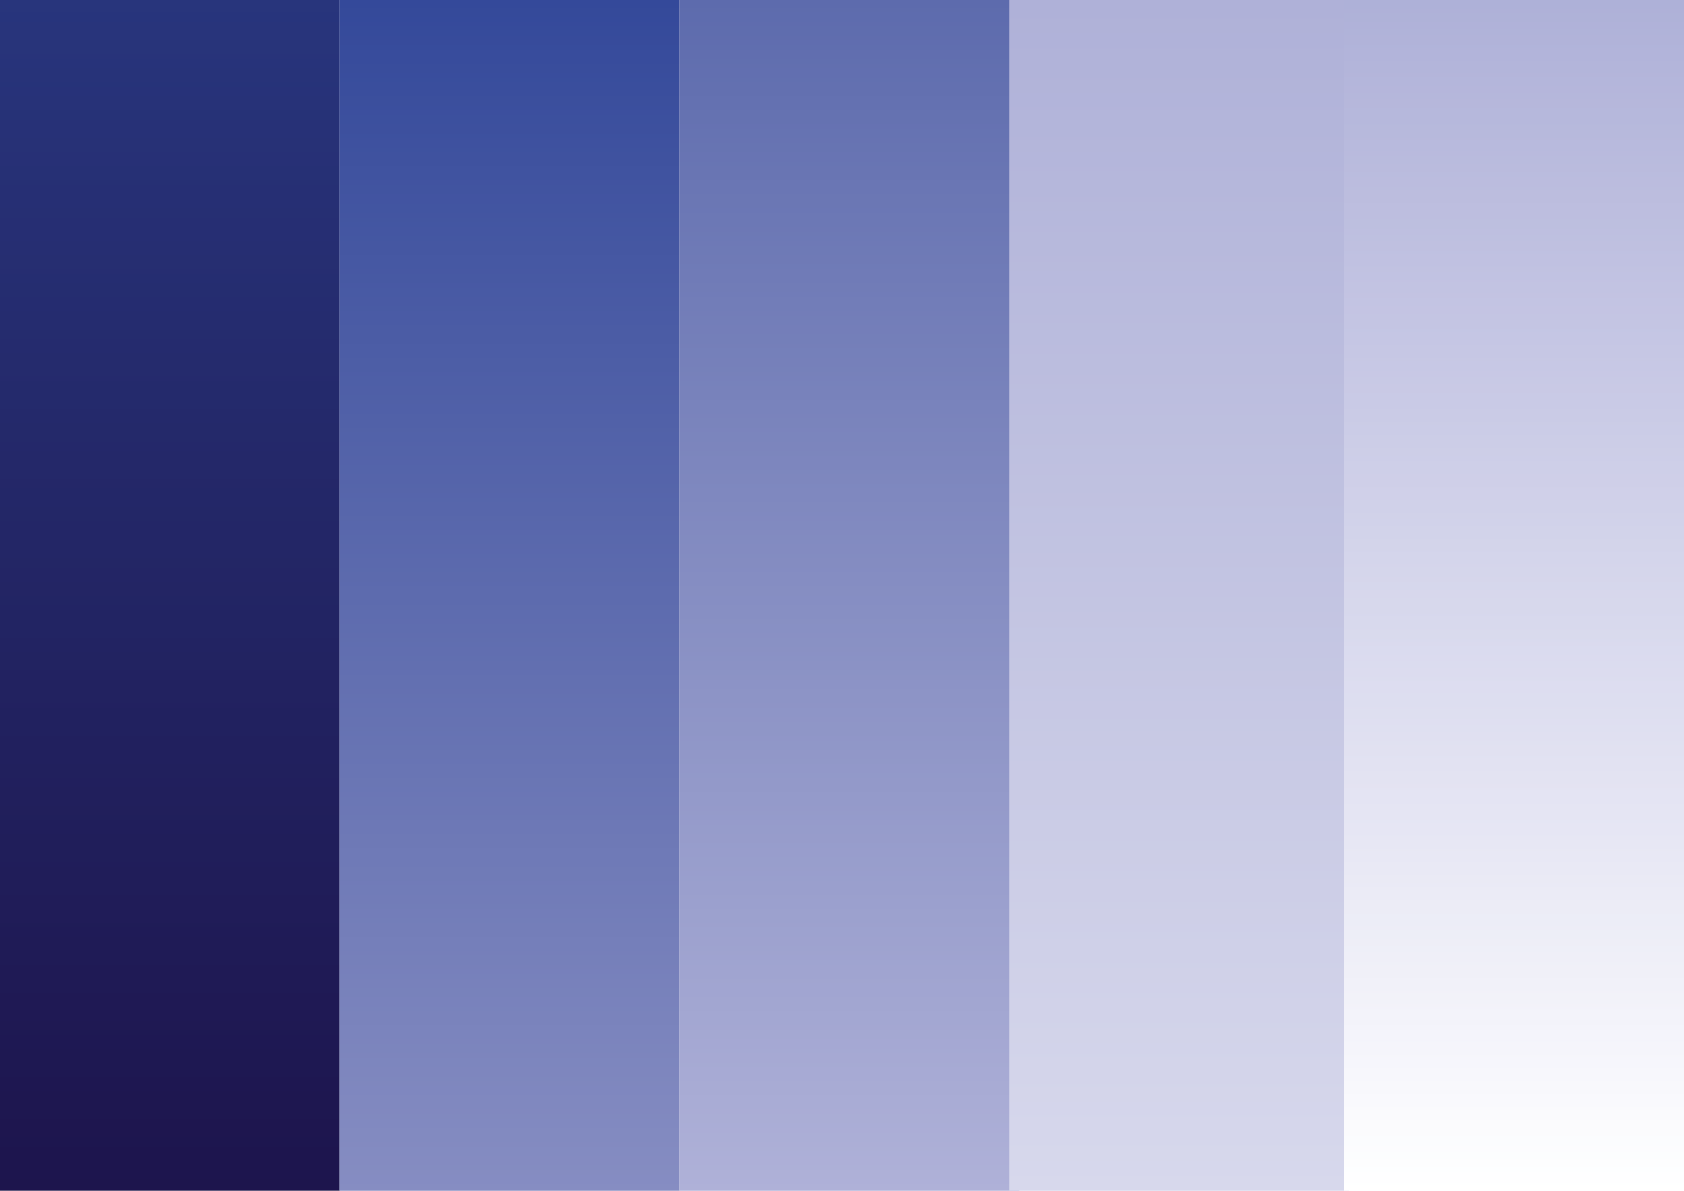 Mögliche Farbkombinationen der Hintergrundfarben als Verlaufsanwendung